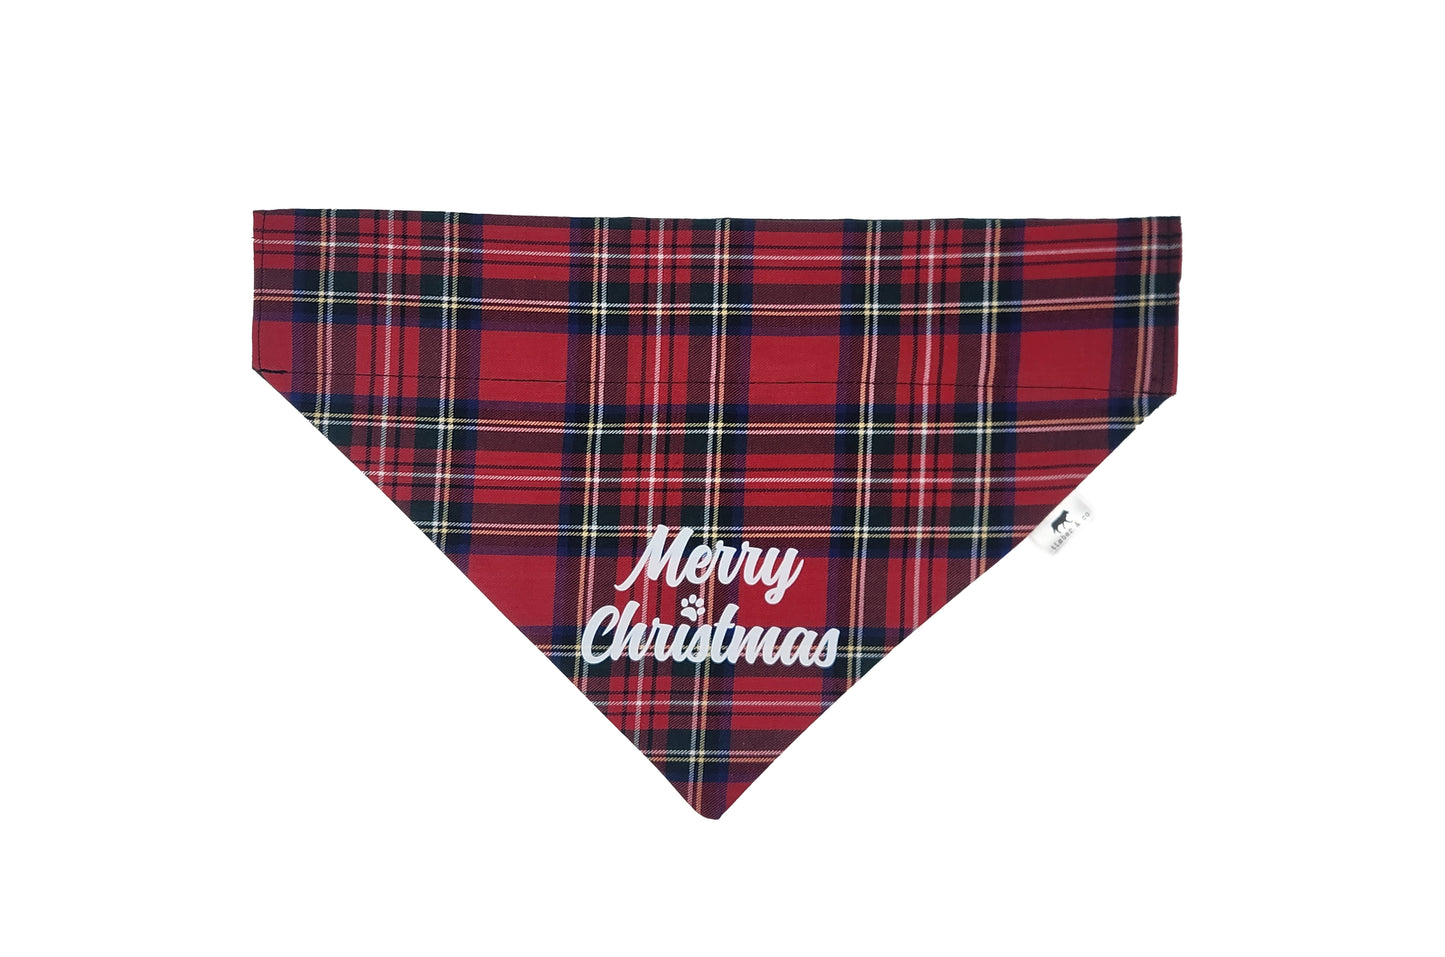 Merry Christmas - Holiday Over the Collar Doggie Bandana